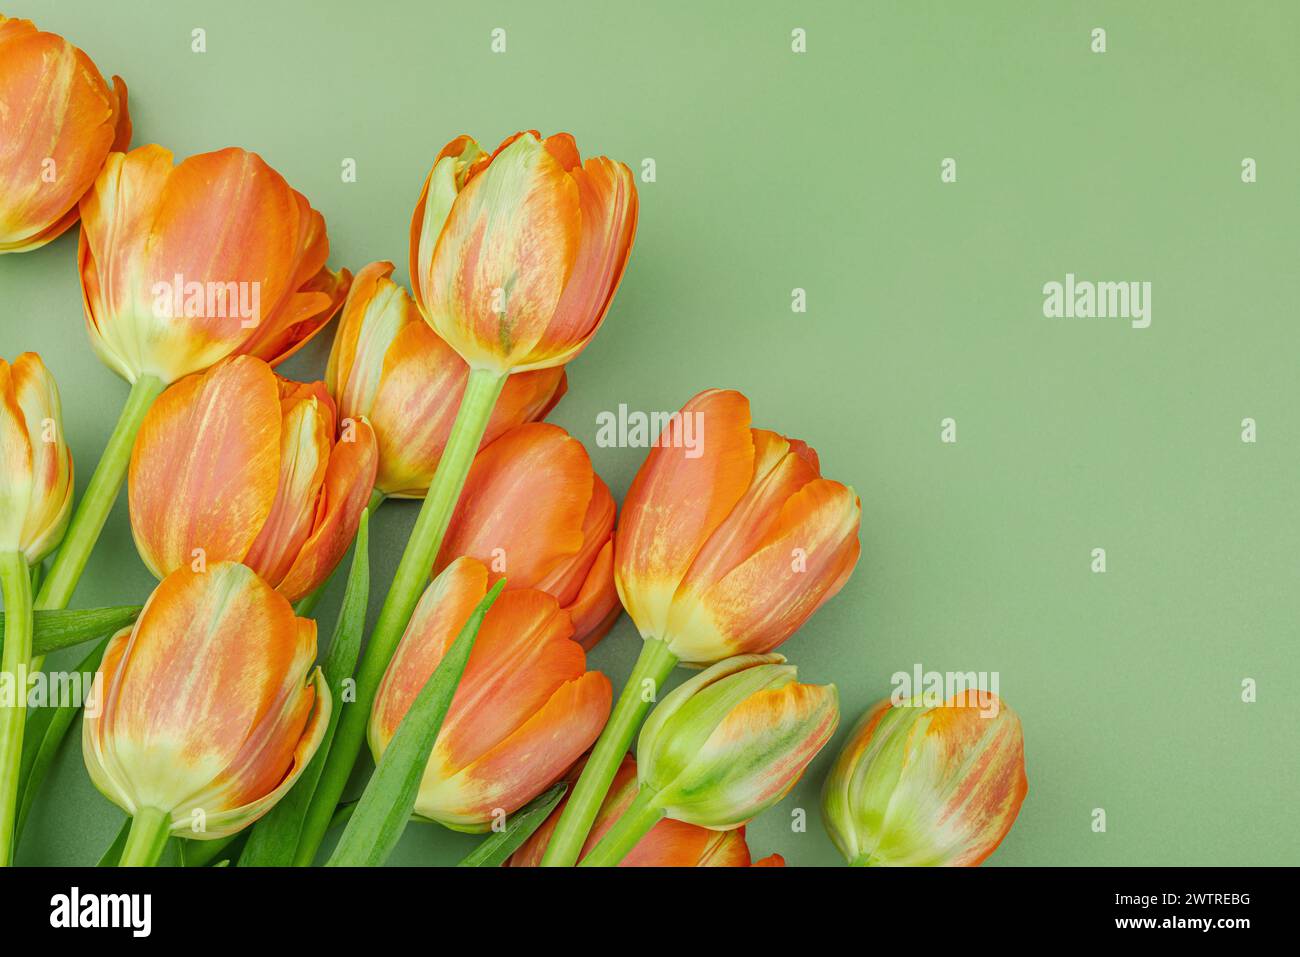 Leuchtend orange Tulpen auf pastellgrünem Hintergrund. Festliches Konzept für Muttertag oder Valentinstag. Grußkarte, Osterliege, beste Wünsche, t Stockfoto